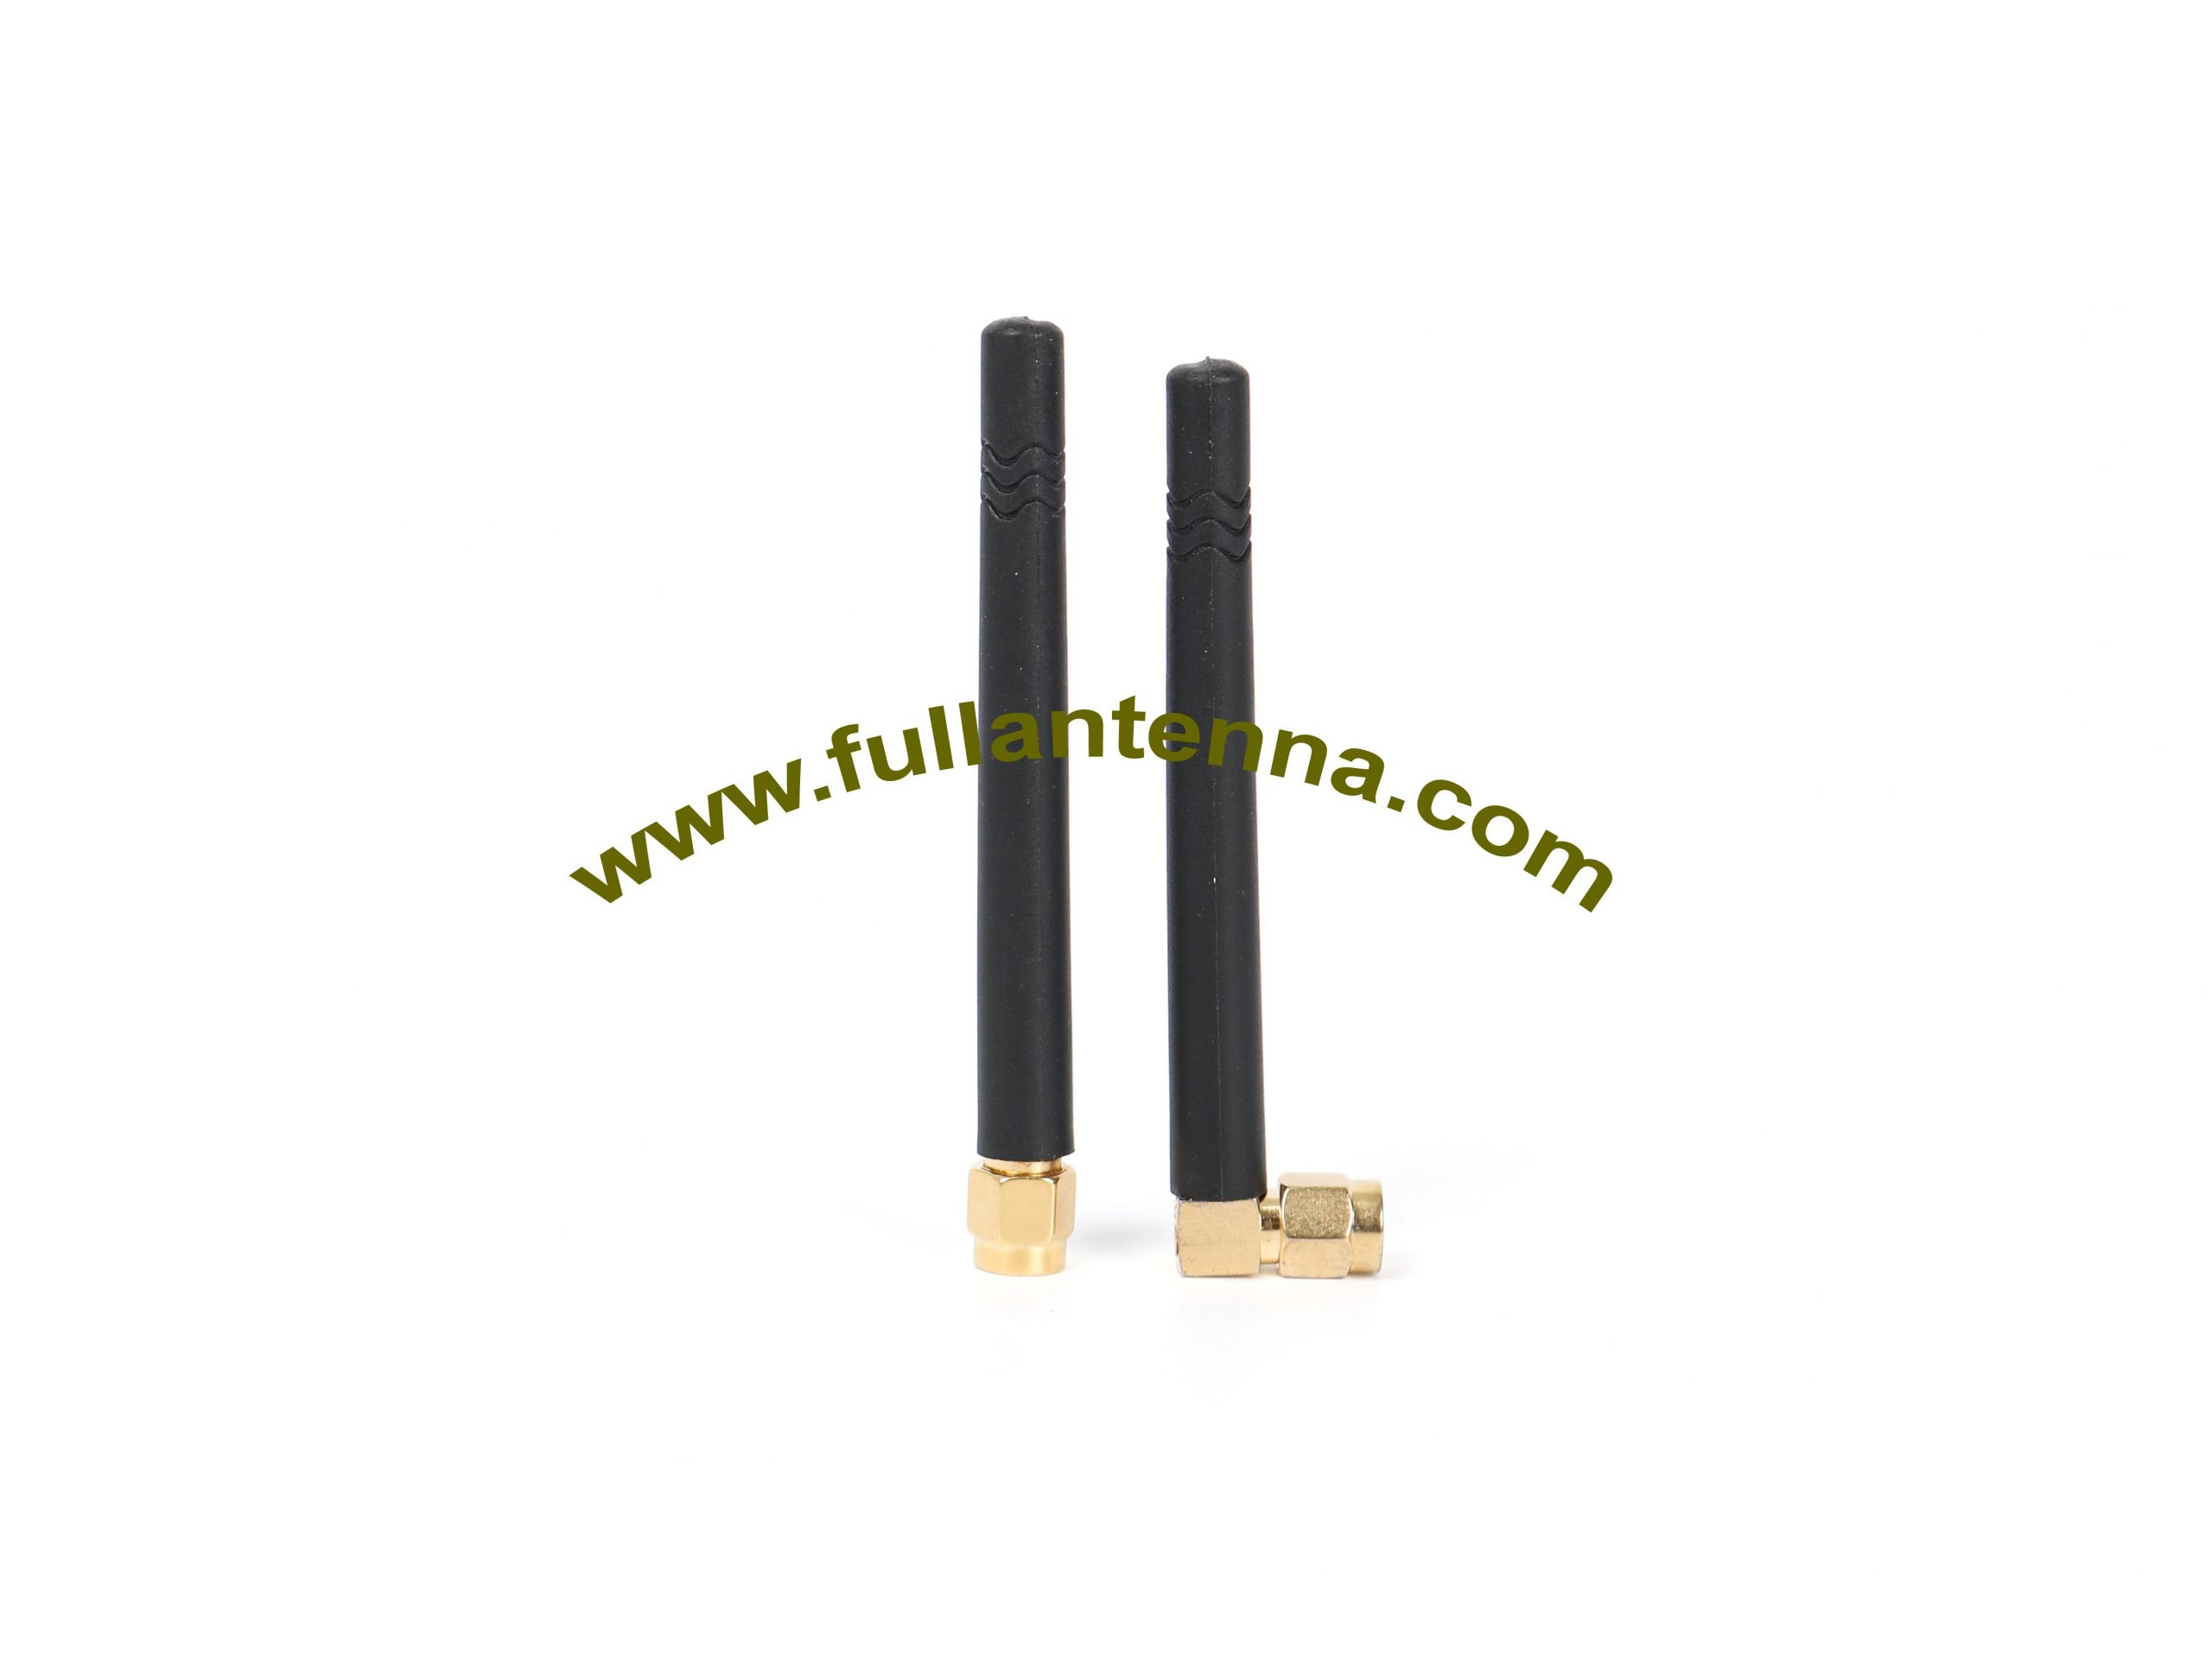 P / N: Antena de goma FA3G.01,3G, antena 3G con SMA macho recto o recto